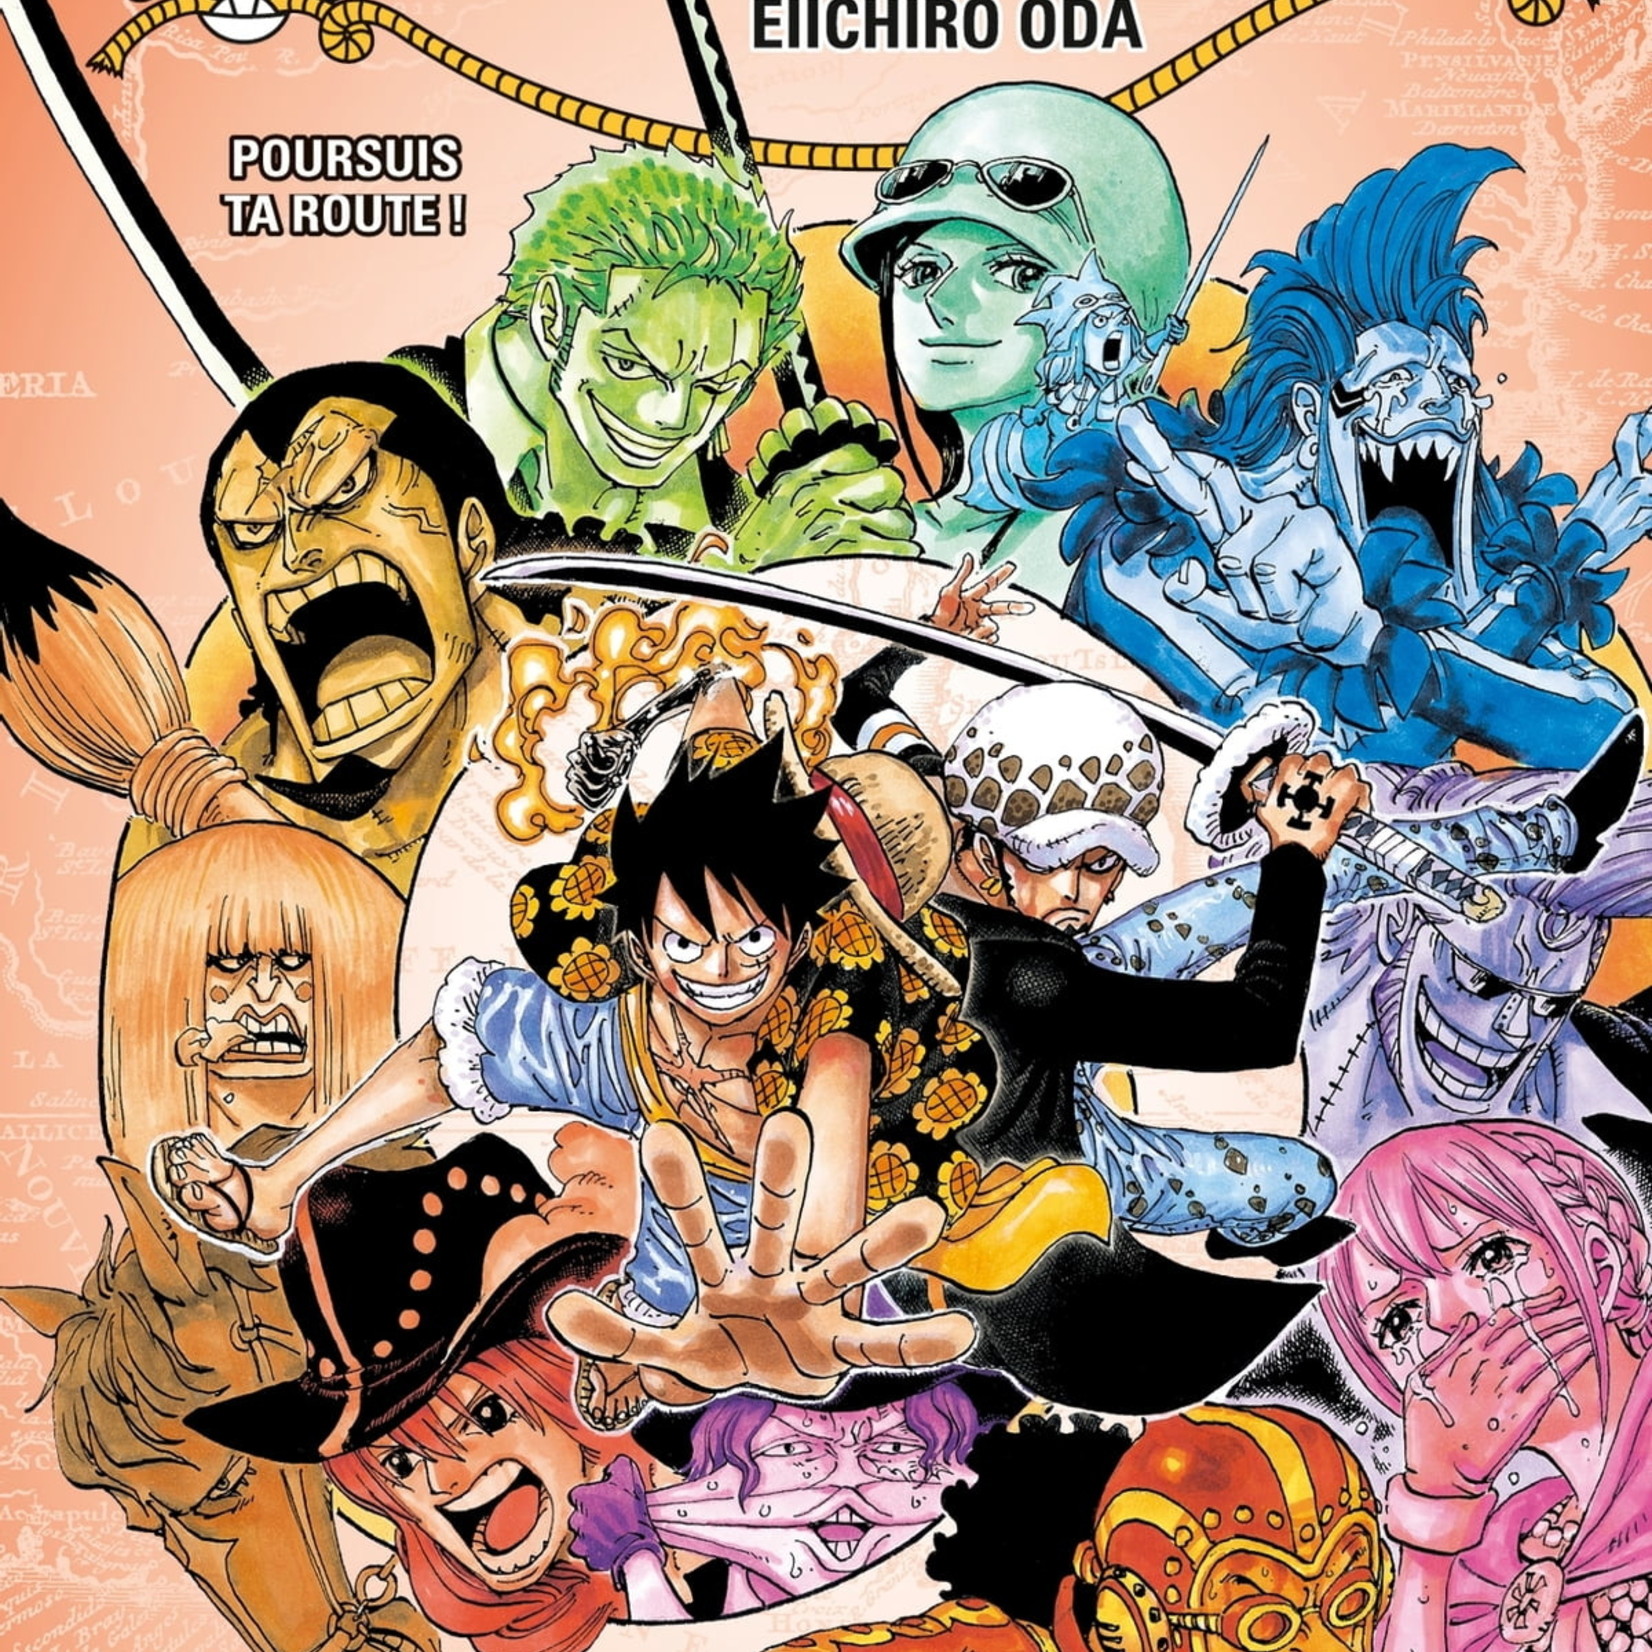 Glénat Manga - One Piece Tome 076